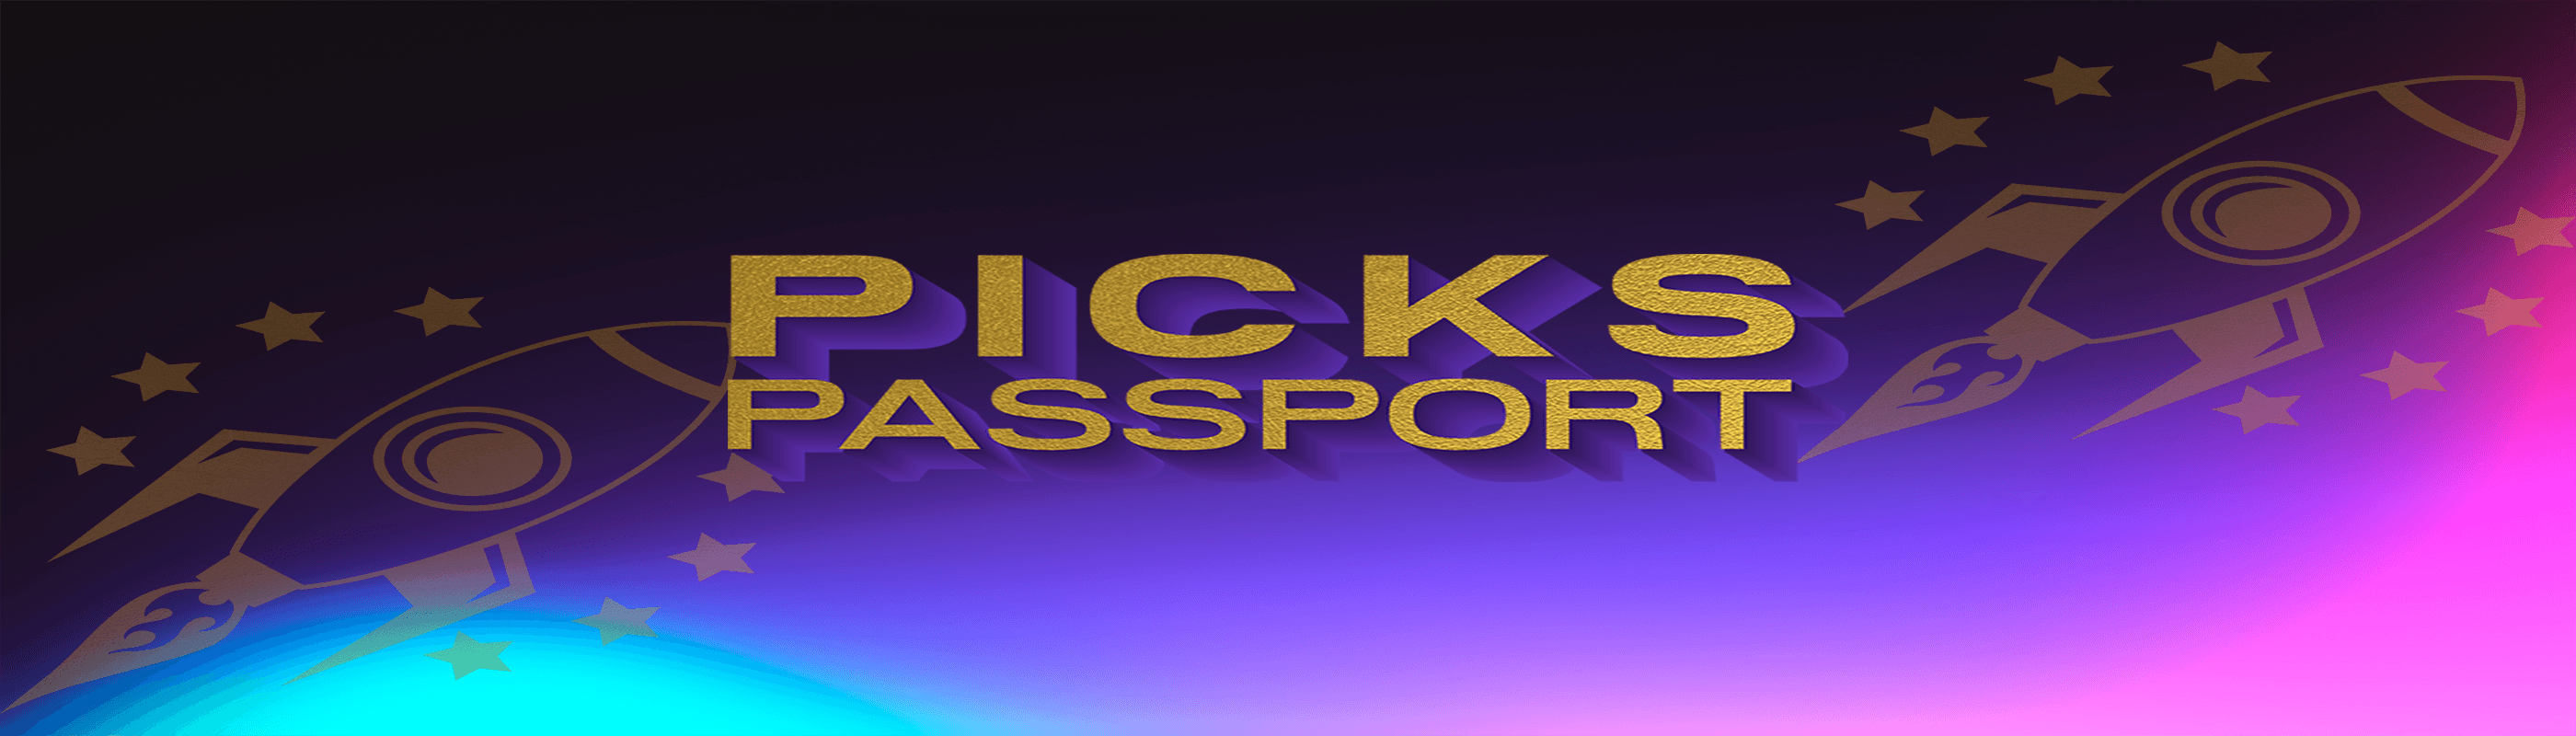 PicksPassport banner